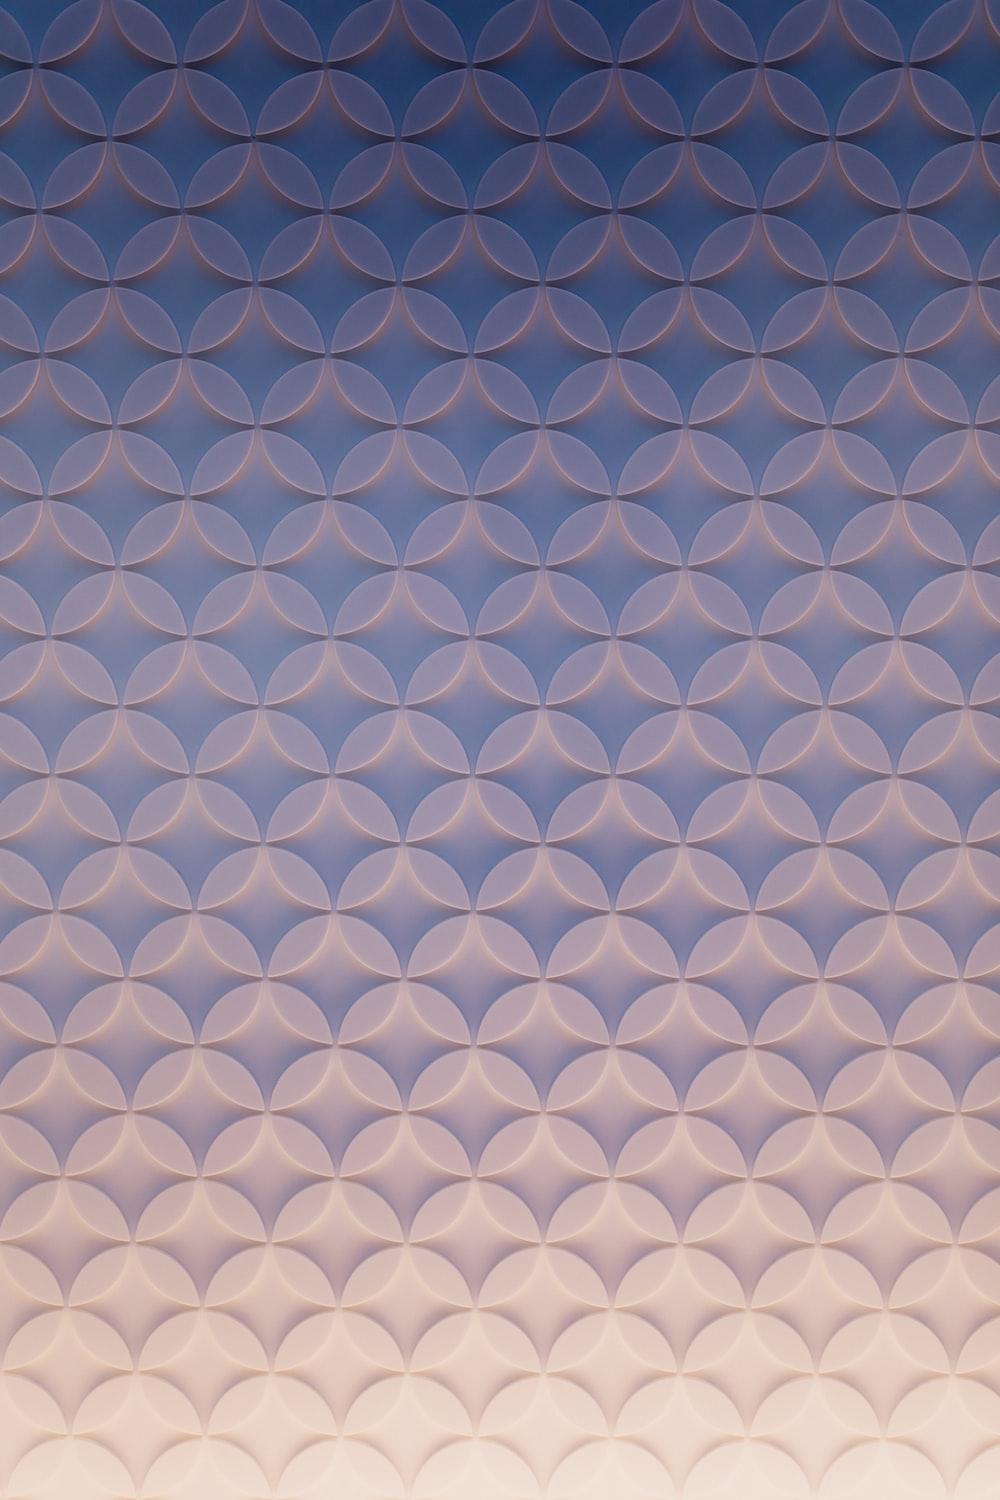 Pattern Wallpaper: Free HD Download [HQ]